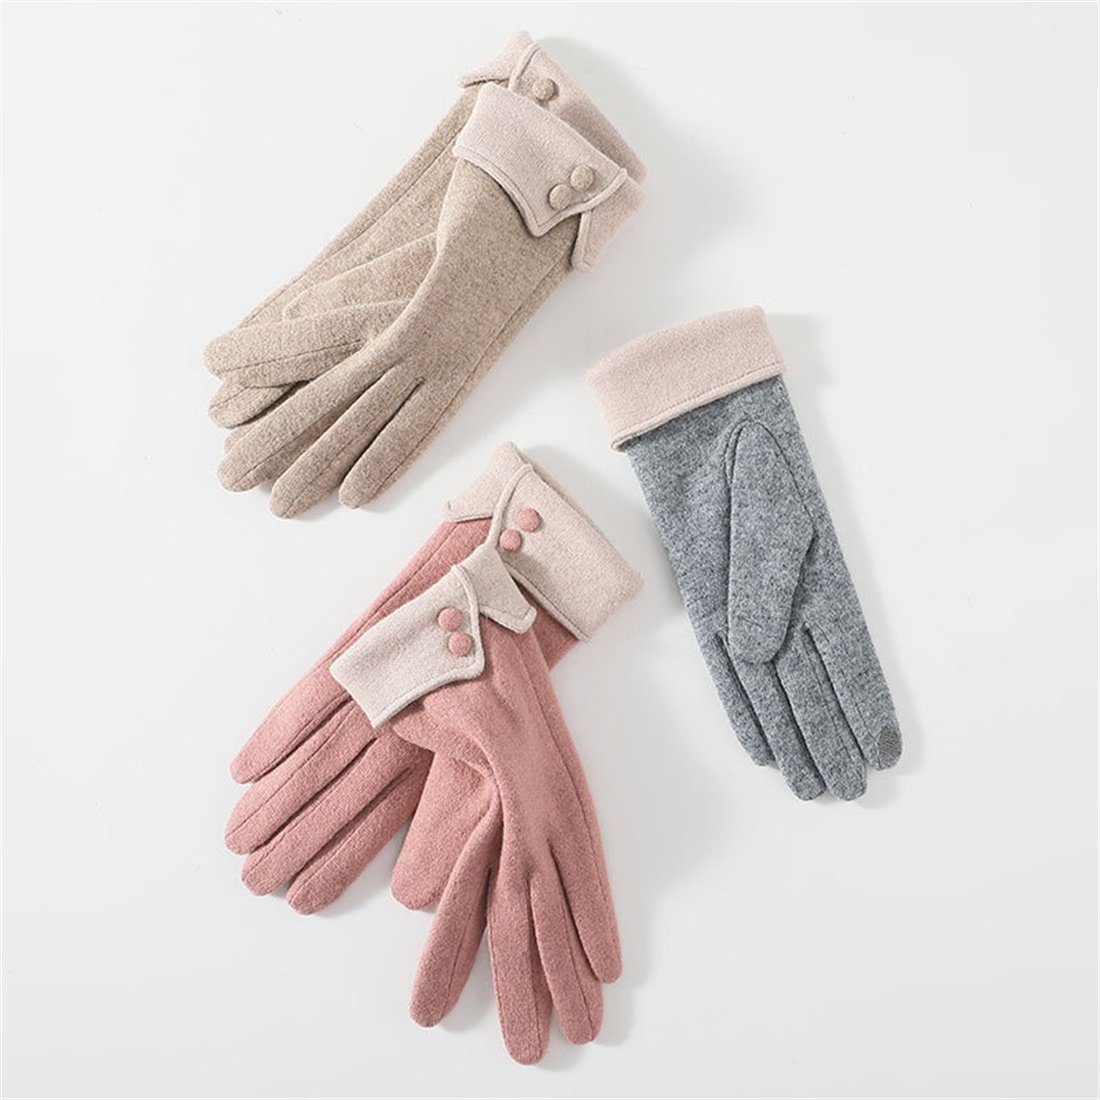 DÖRÖY warme gepolsterte Winter Grau Reithandschuhe Kaschmir Handschuhe,faux Damen Fleecehandschuhe